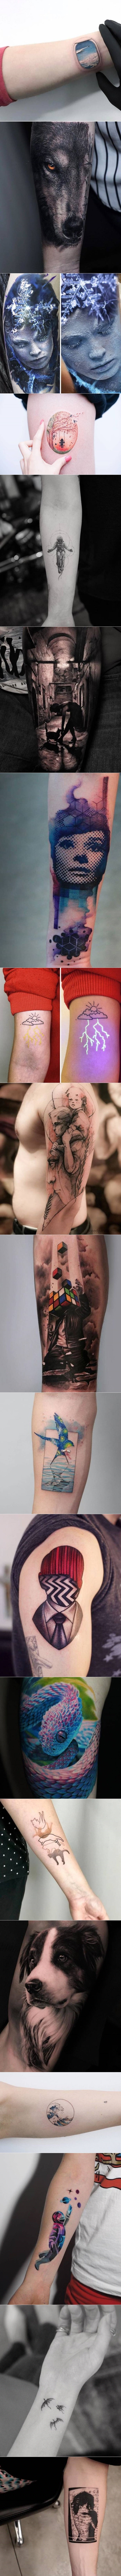 Možda niste pretjerani ljubitelji tetovaža, no neke od ovih primjera je sasvim pošteno nazvati umjetnošću